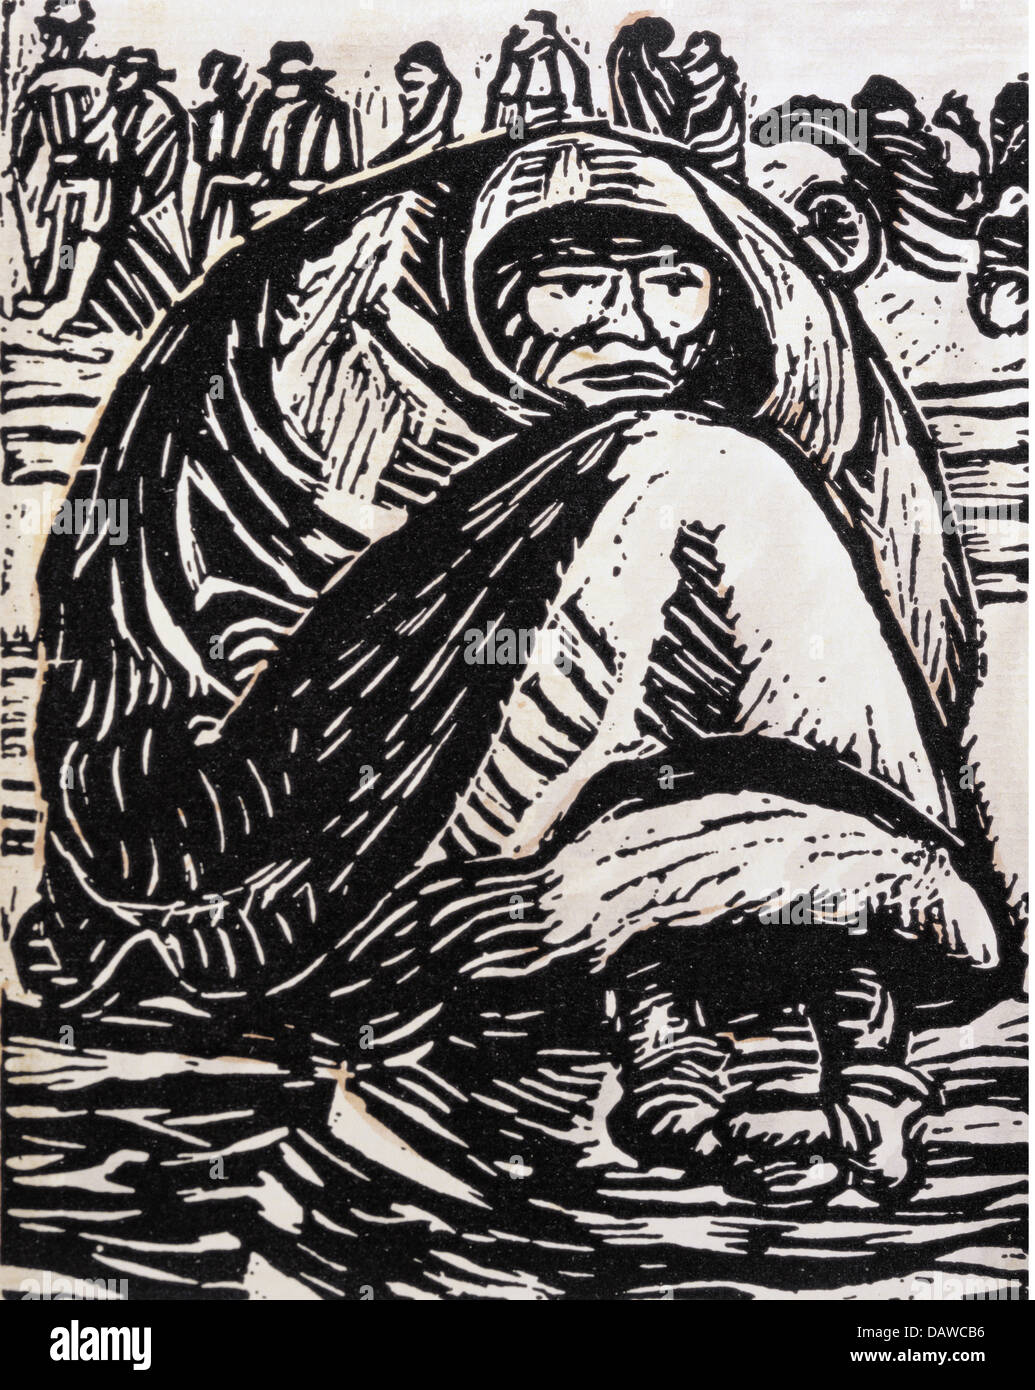 Belle arti, Barlach, Ernst (1870 - 1938), grafica, 'Die Armut" (la miseria), xilografia, Germania, 1918, collezione privata, Foto Stock